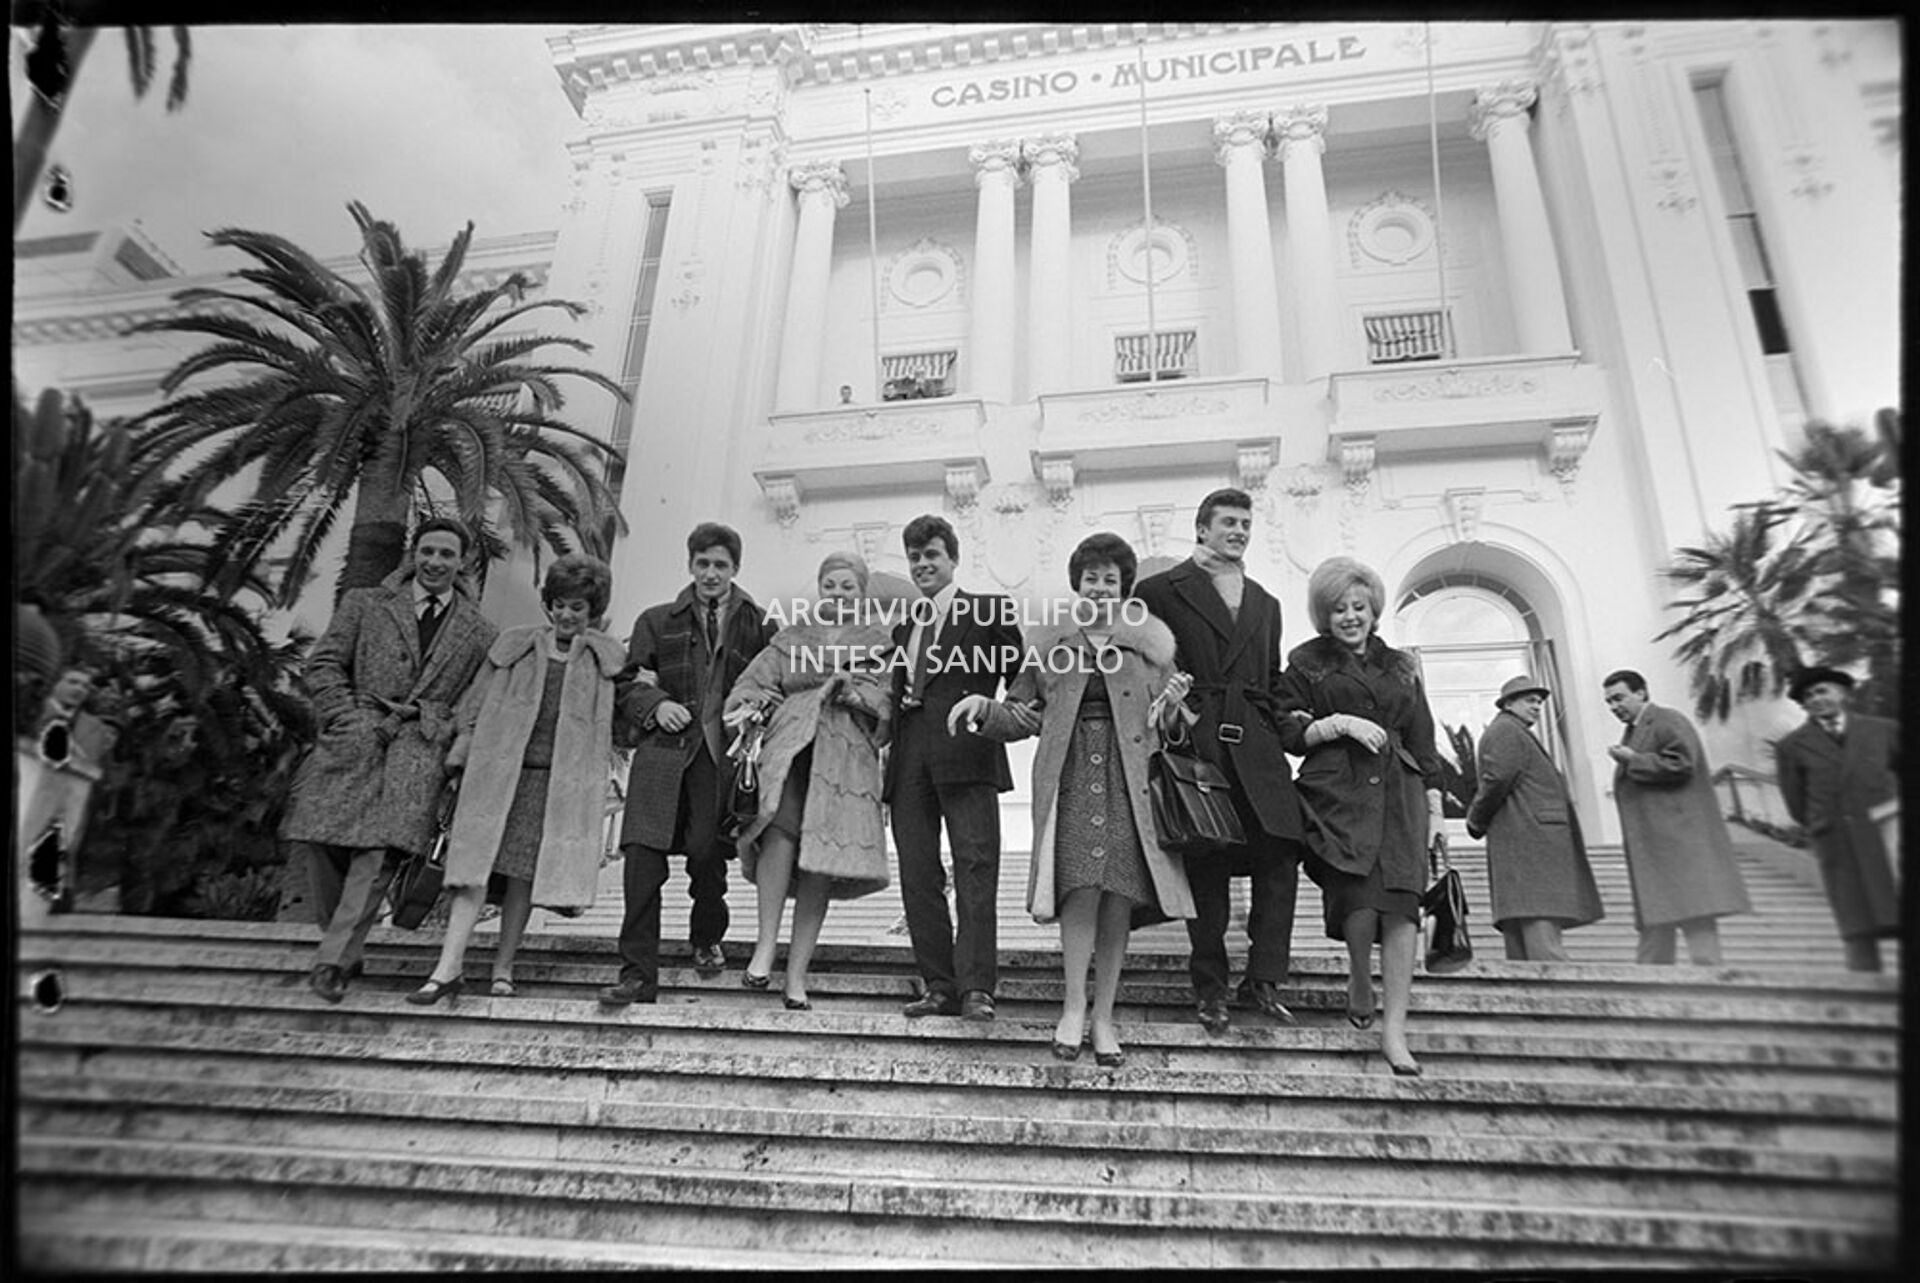 Group photo on the Casino steps during the 11th Sanremo Festival: from left Rocco Granata, Jolanda Rossin, Pino Donaggio, Silvia Guidi, Little Tony, Nadia Liani, Tony Renis and Betty Curtis